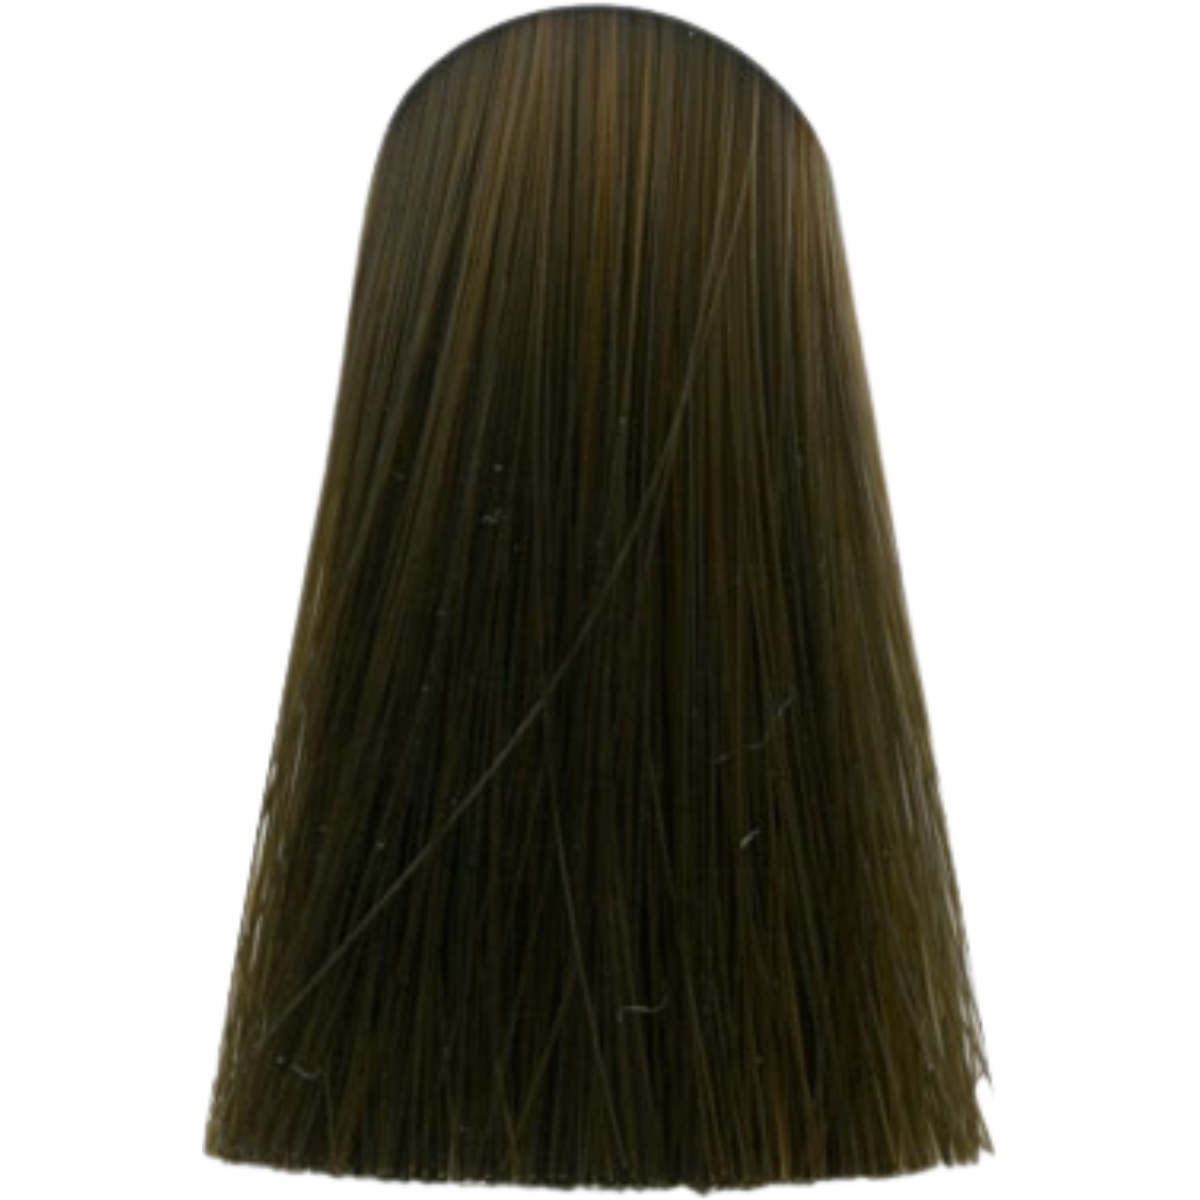 צבע שיער 6.0 DARK BLONDE NATURAL אינדולה INDOLA צבע בסיס לשיער 60 גרם